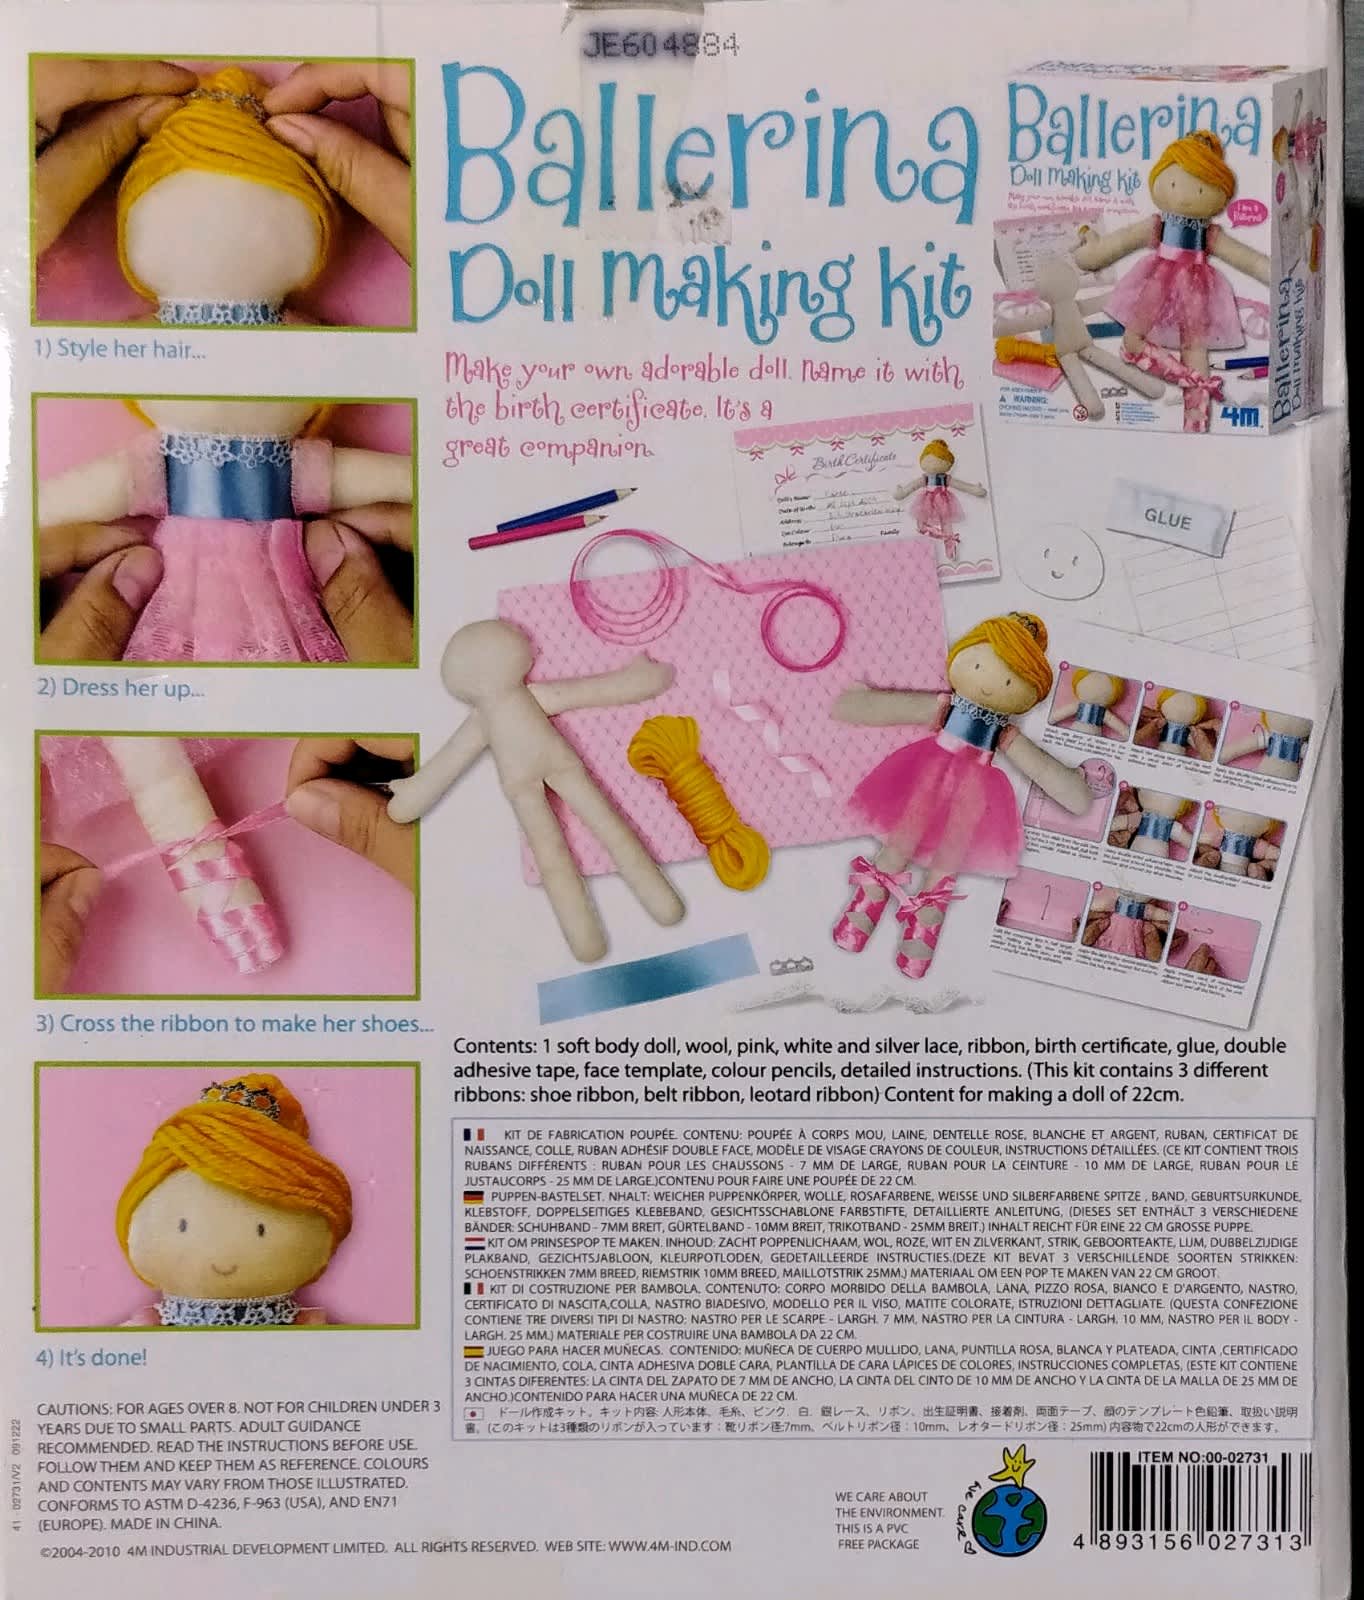 4M Ballerina Doll Making Kit